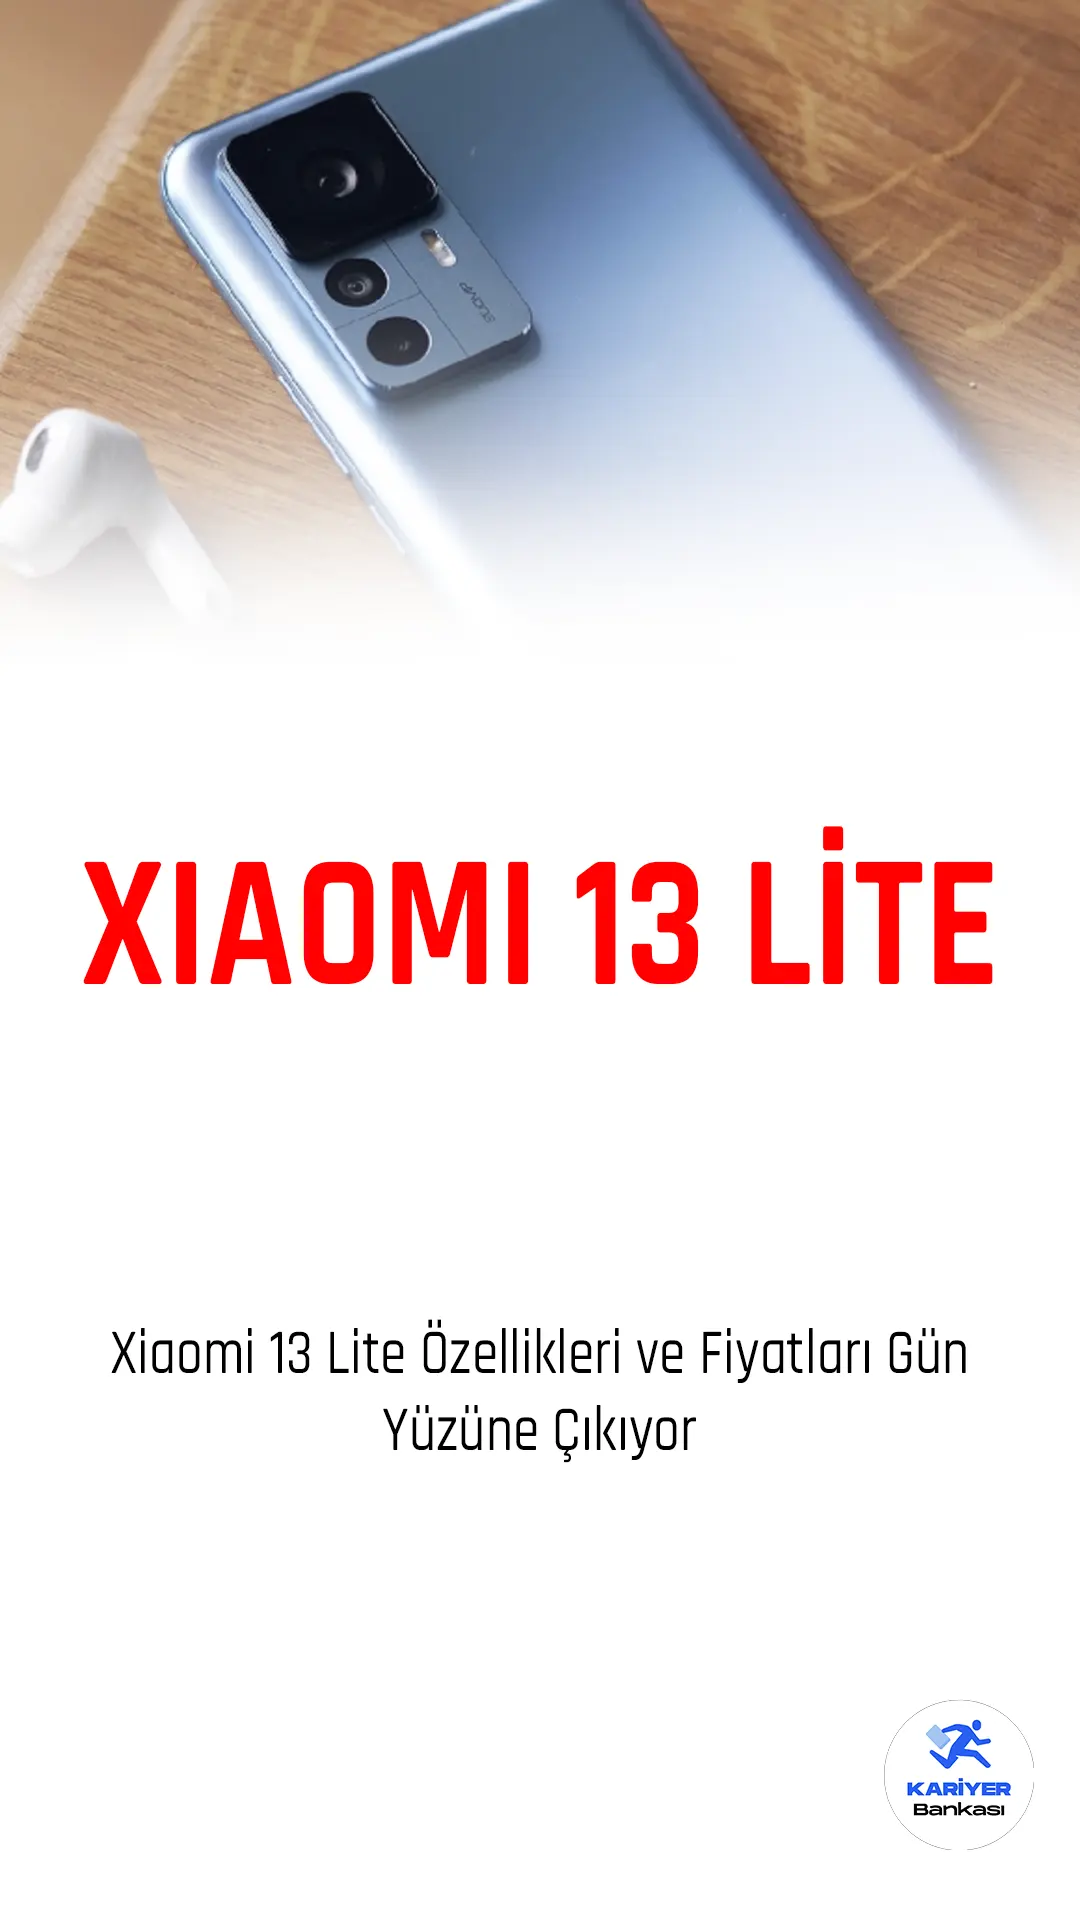 Xiaomi, son yıllarda dünya çapında büyük bir popülerlik kazanmış bir teknoloji şirketidir. Özellikle akıllı telefonlarıyla bilinirler ve Xiaomi'nin yeni modeli 13 Lite de şirketin ürün yelpazesindeki en son eklemelerden olacak...